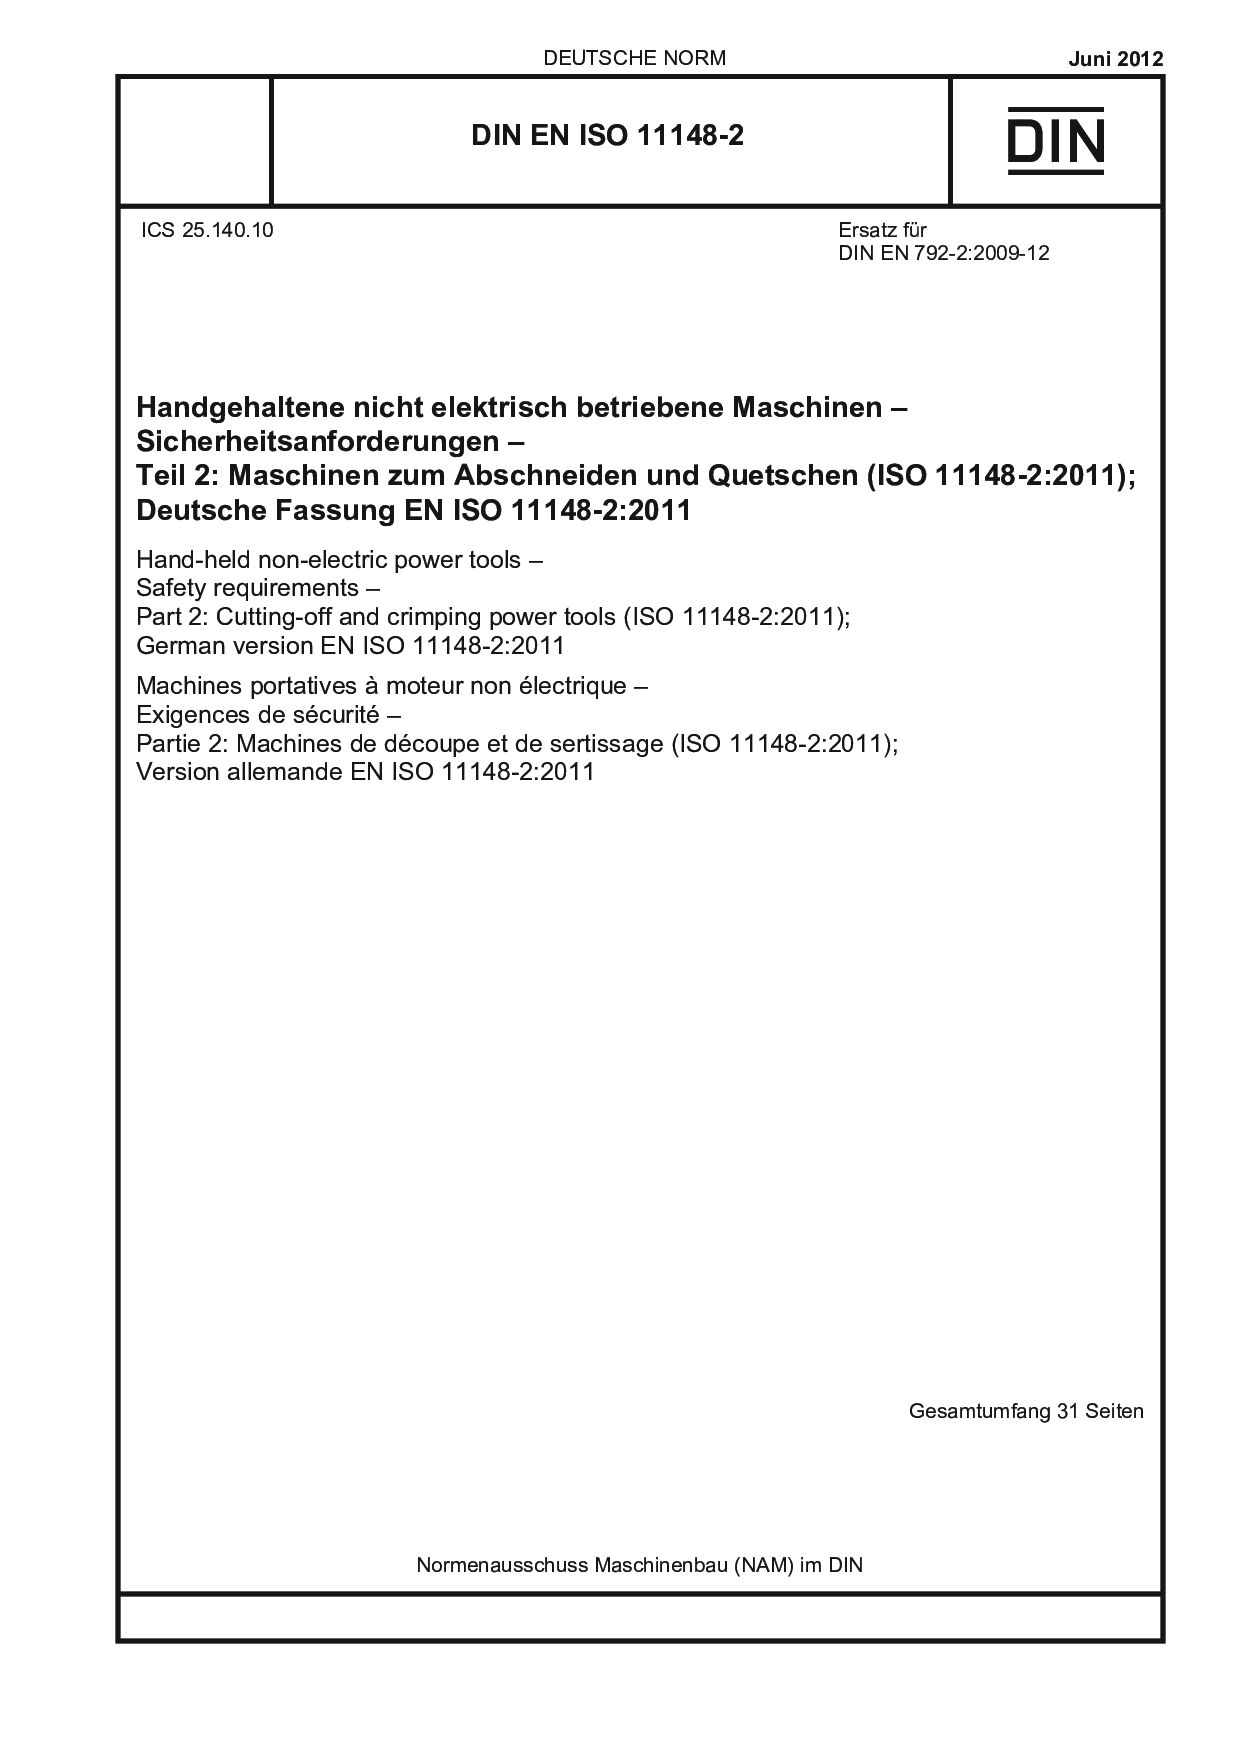 DIN EN ISO 11148-2:2012-06